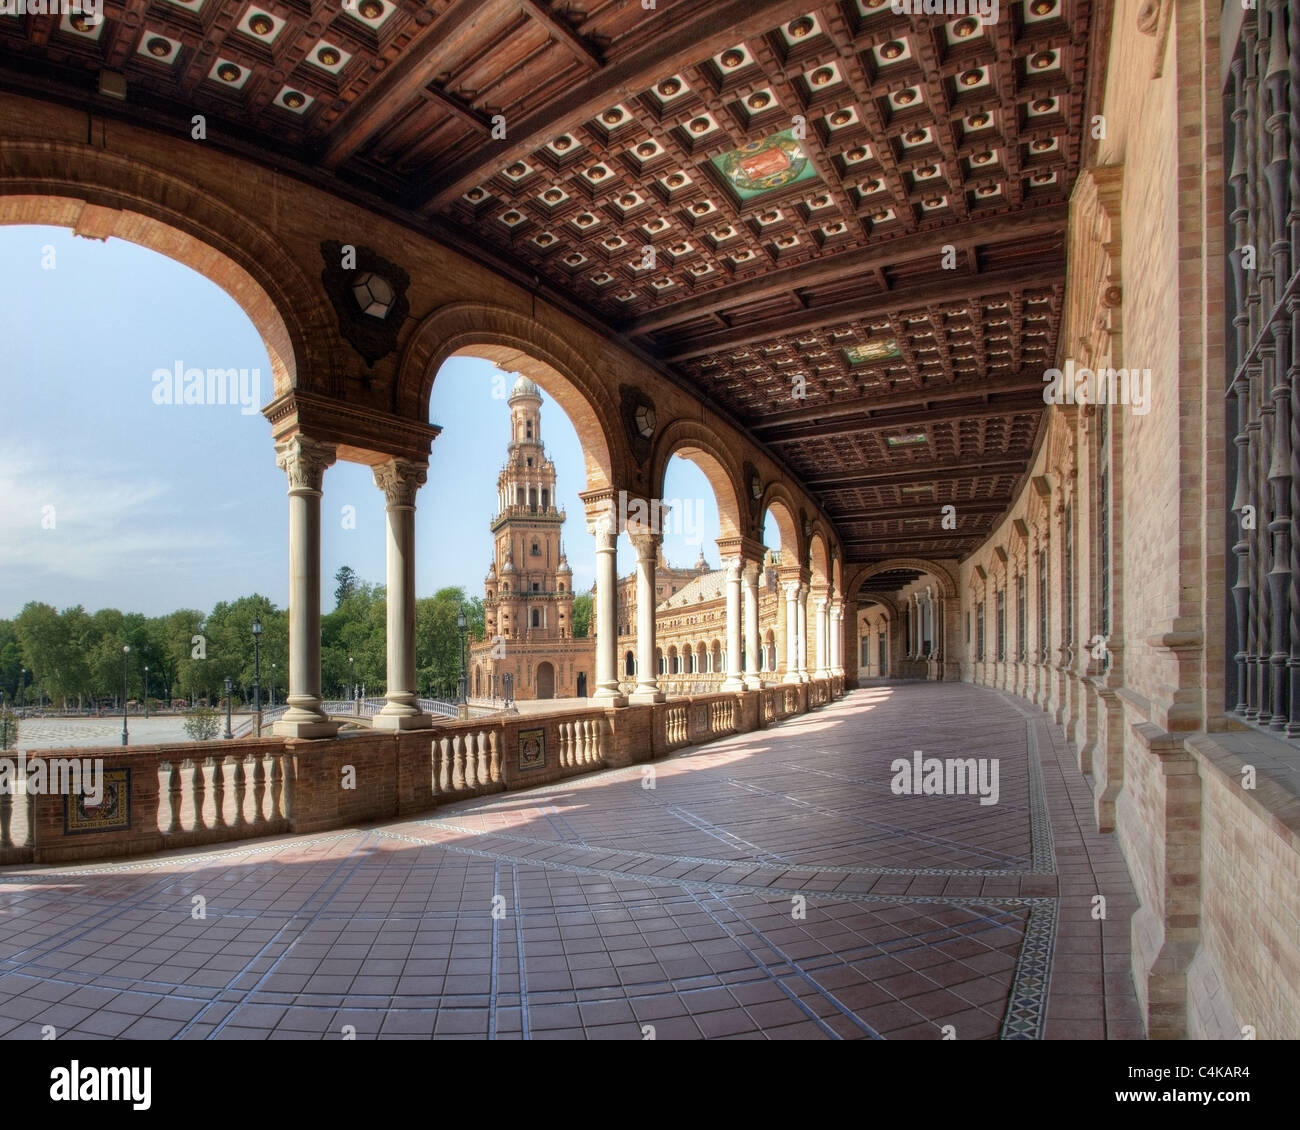 ES - ANDALUSIA: Seville's famous Plaza de Espana Stock Photo